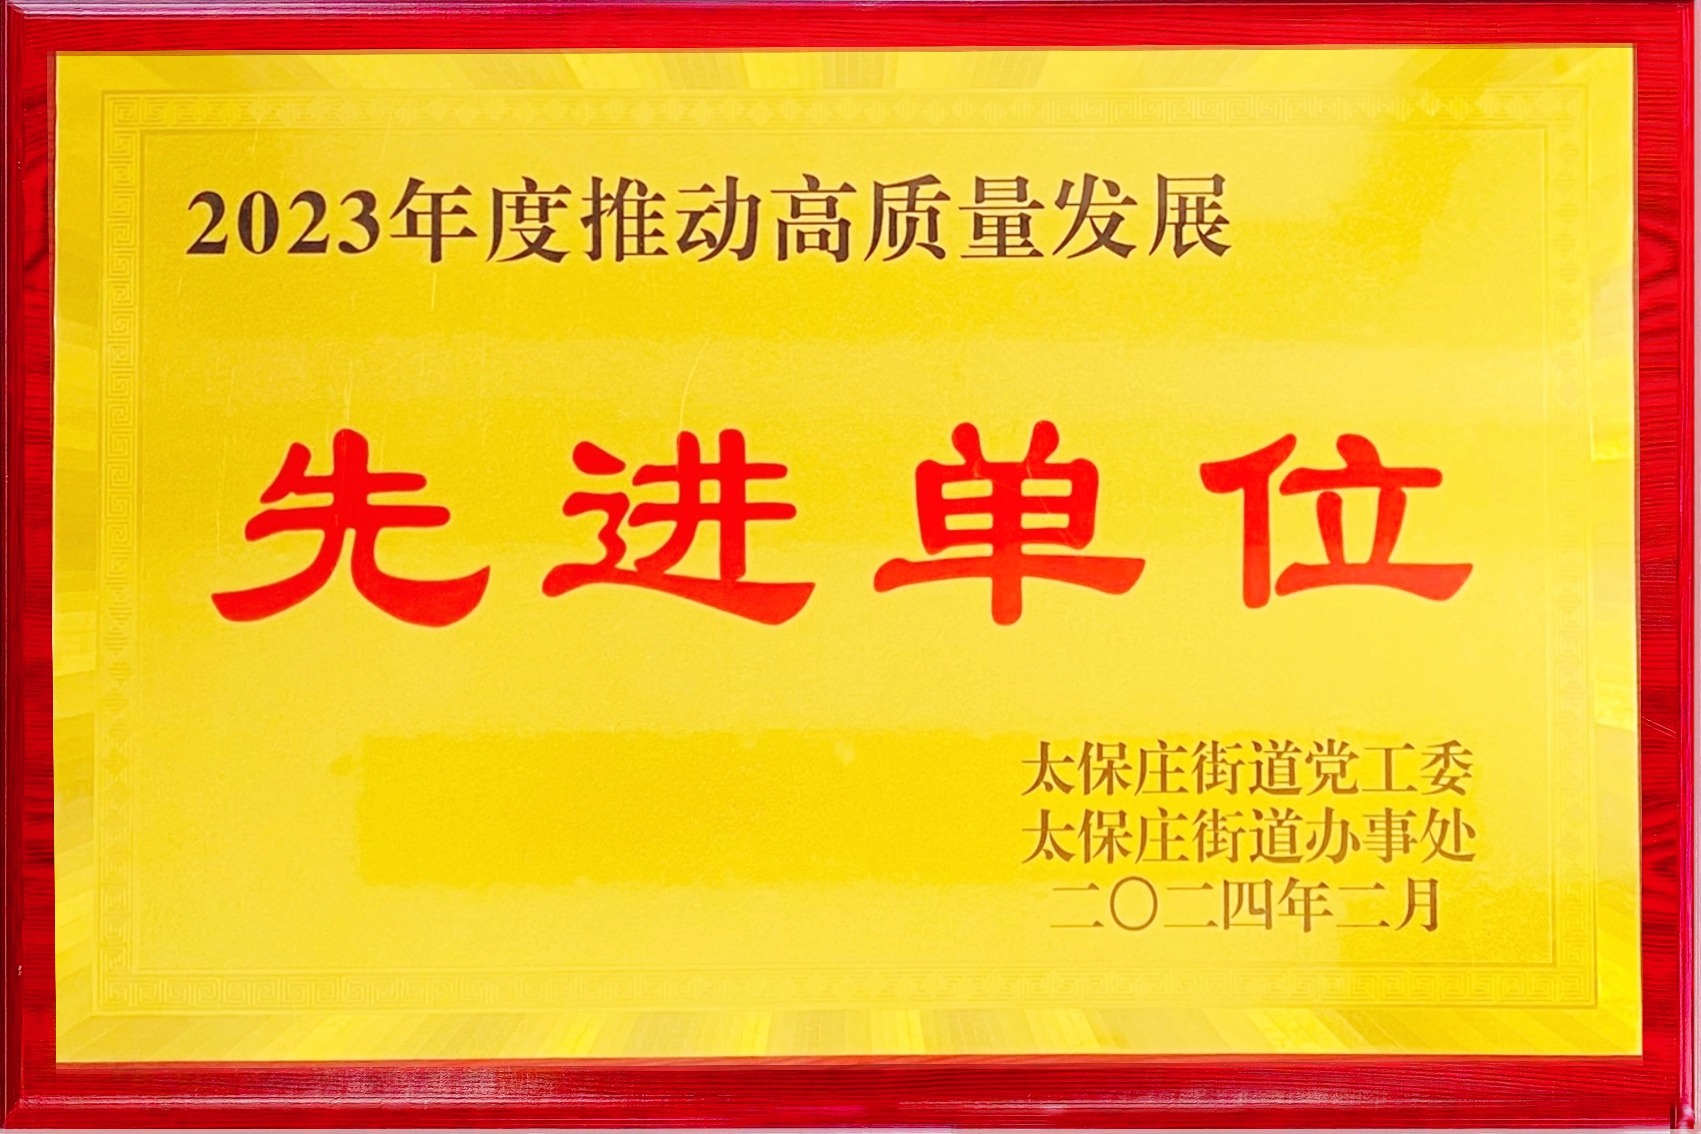 聚天农牧企业荣誉 (14).jpg